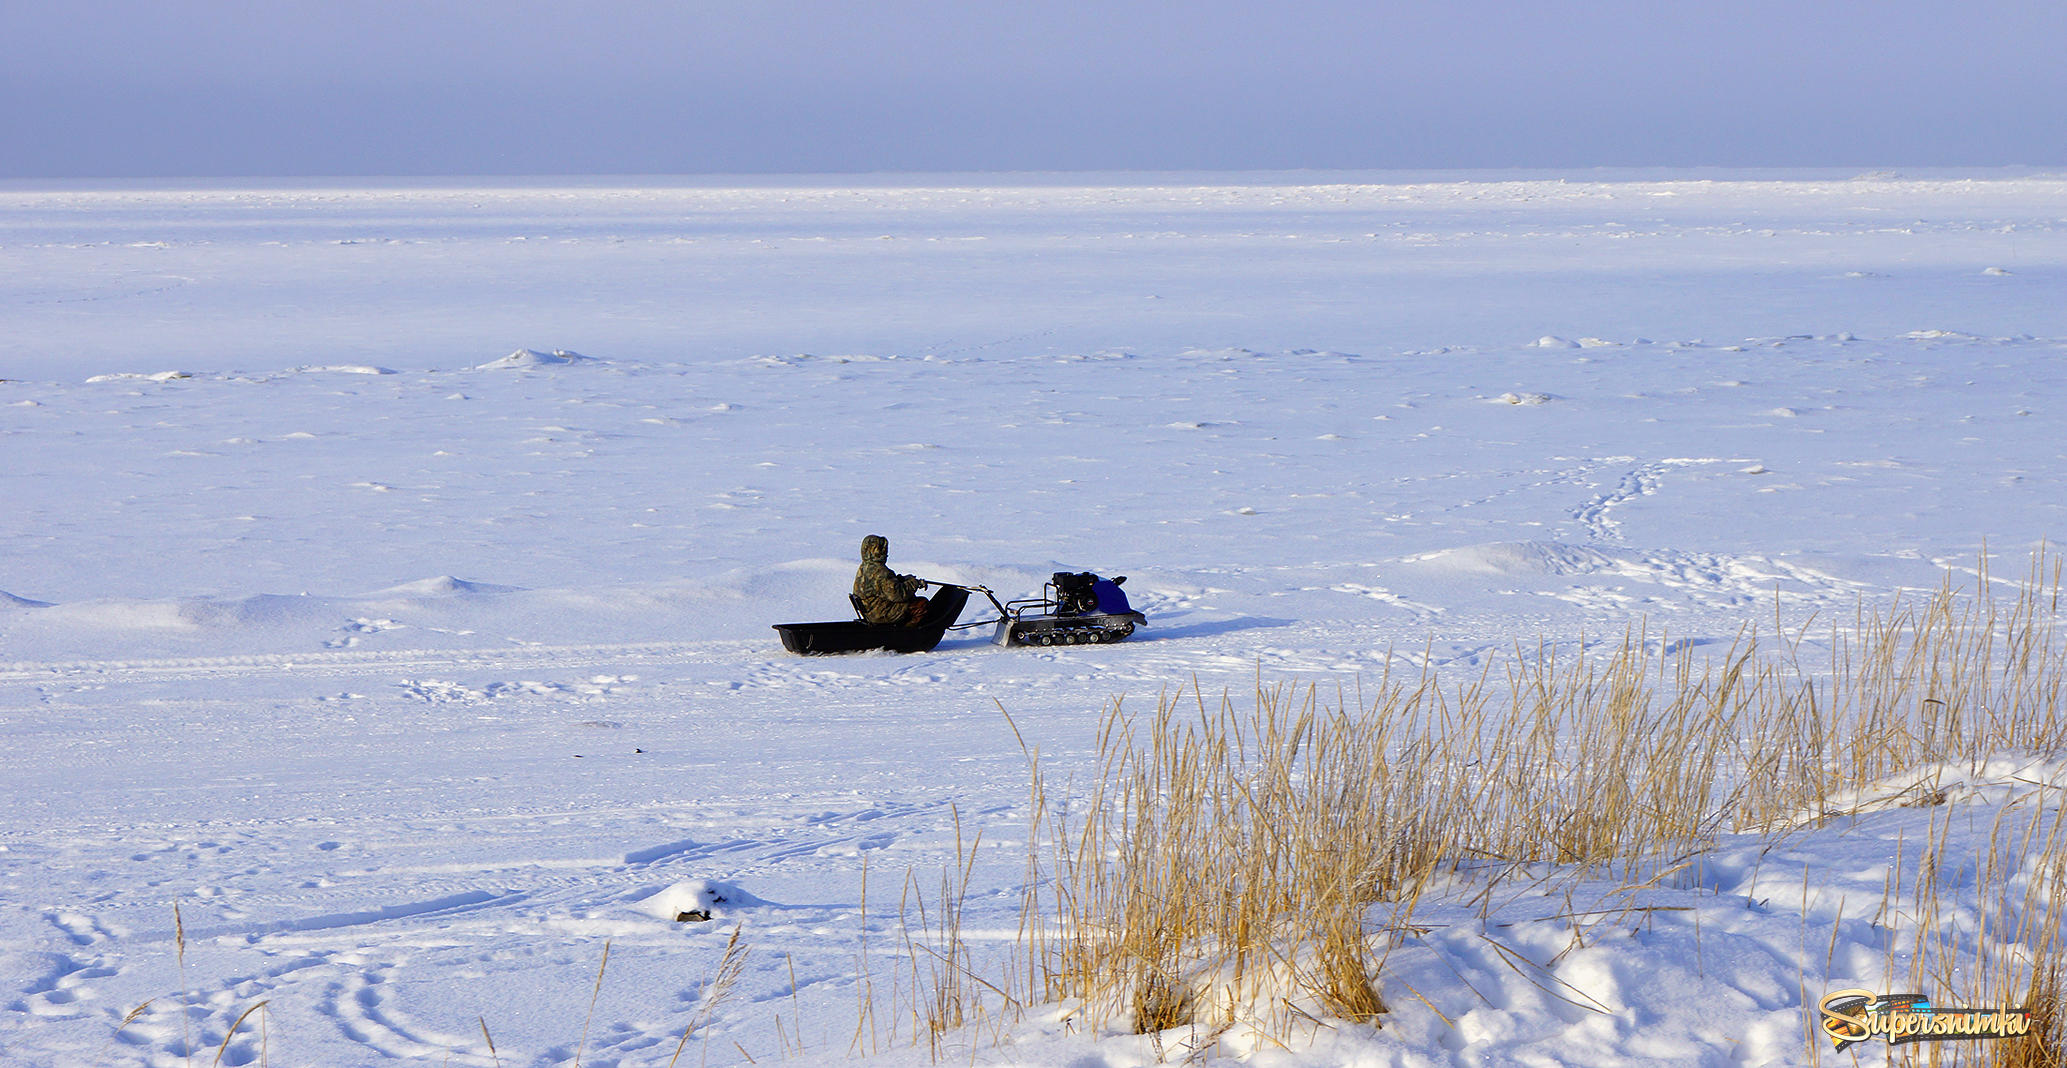 беломорский пейзаж с рыбаком на мотособаке.